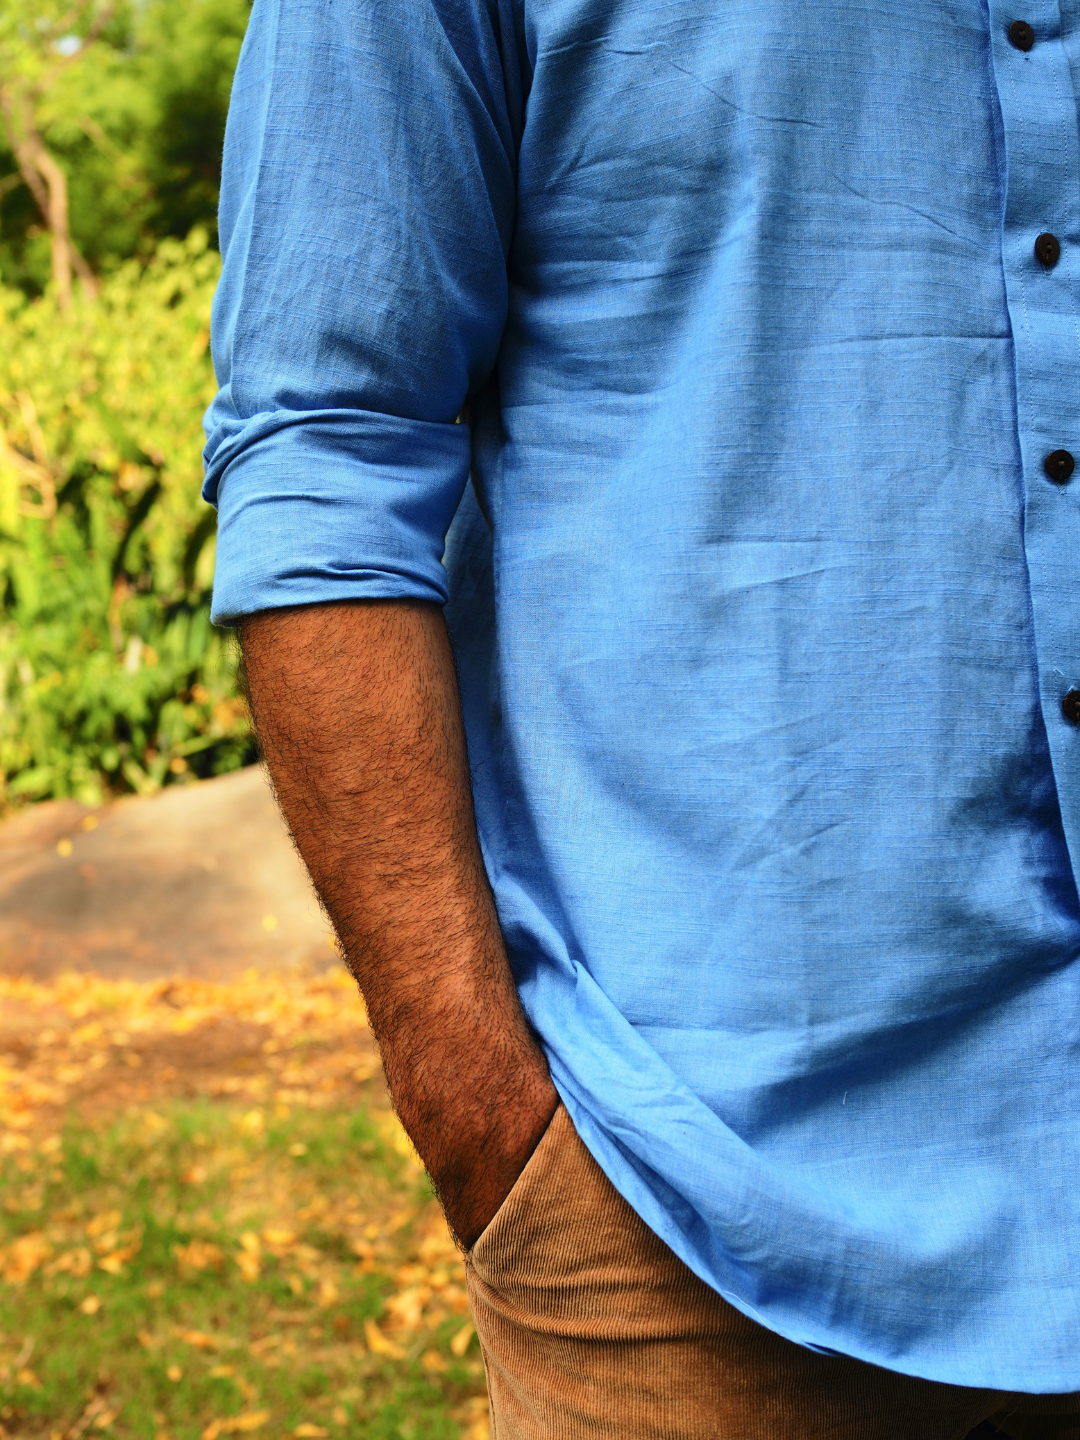 Azure Essence Handloom Shirt